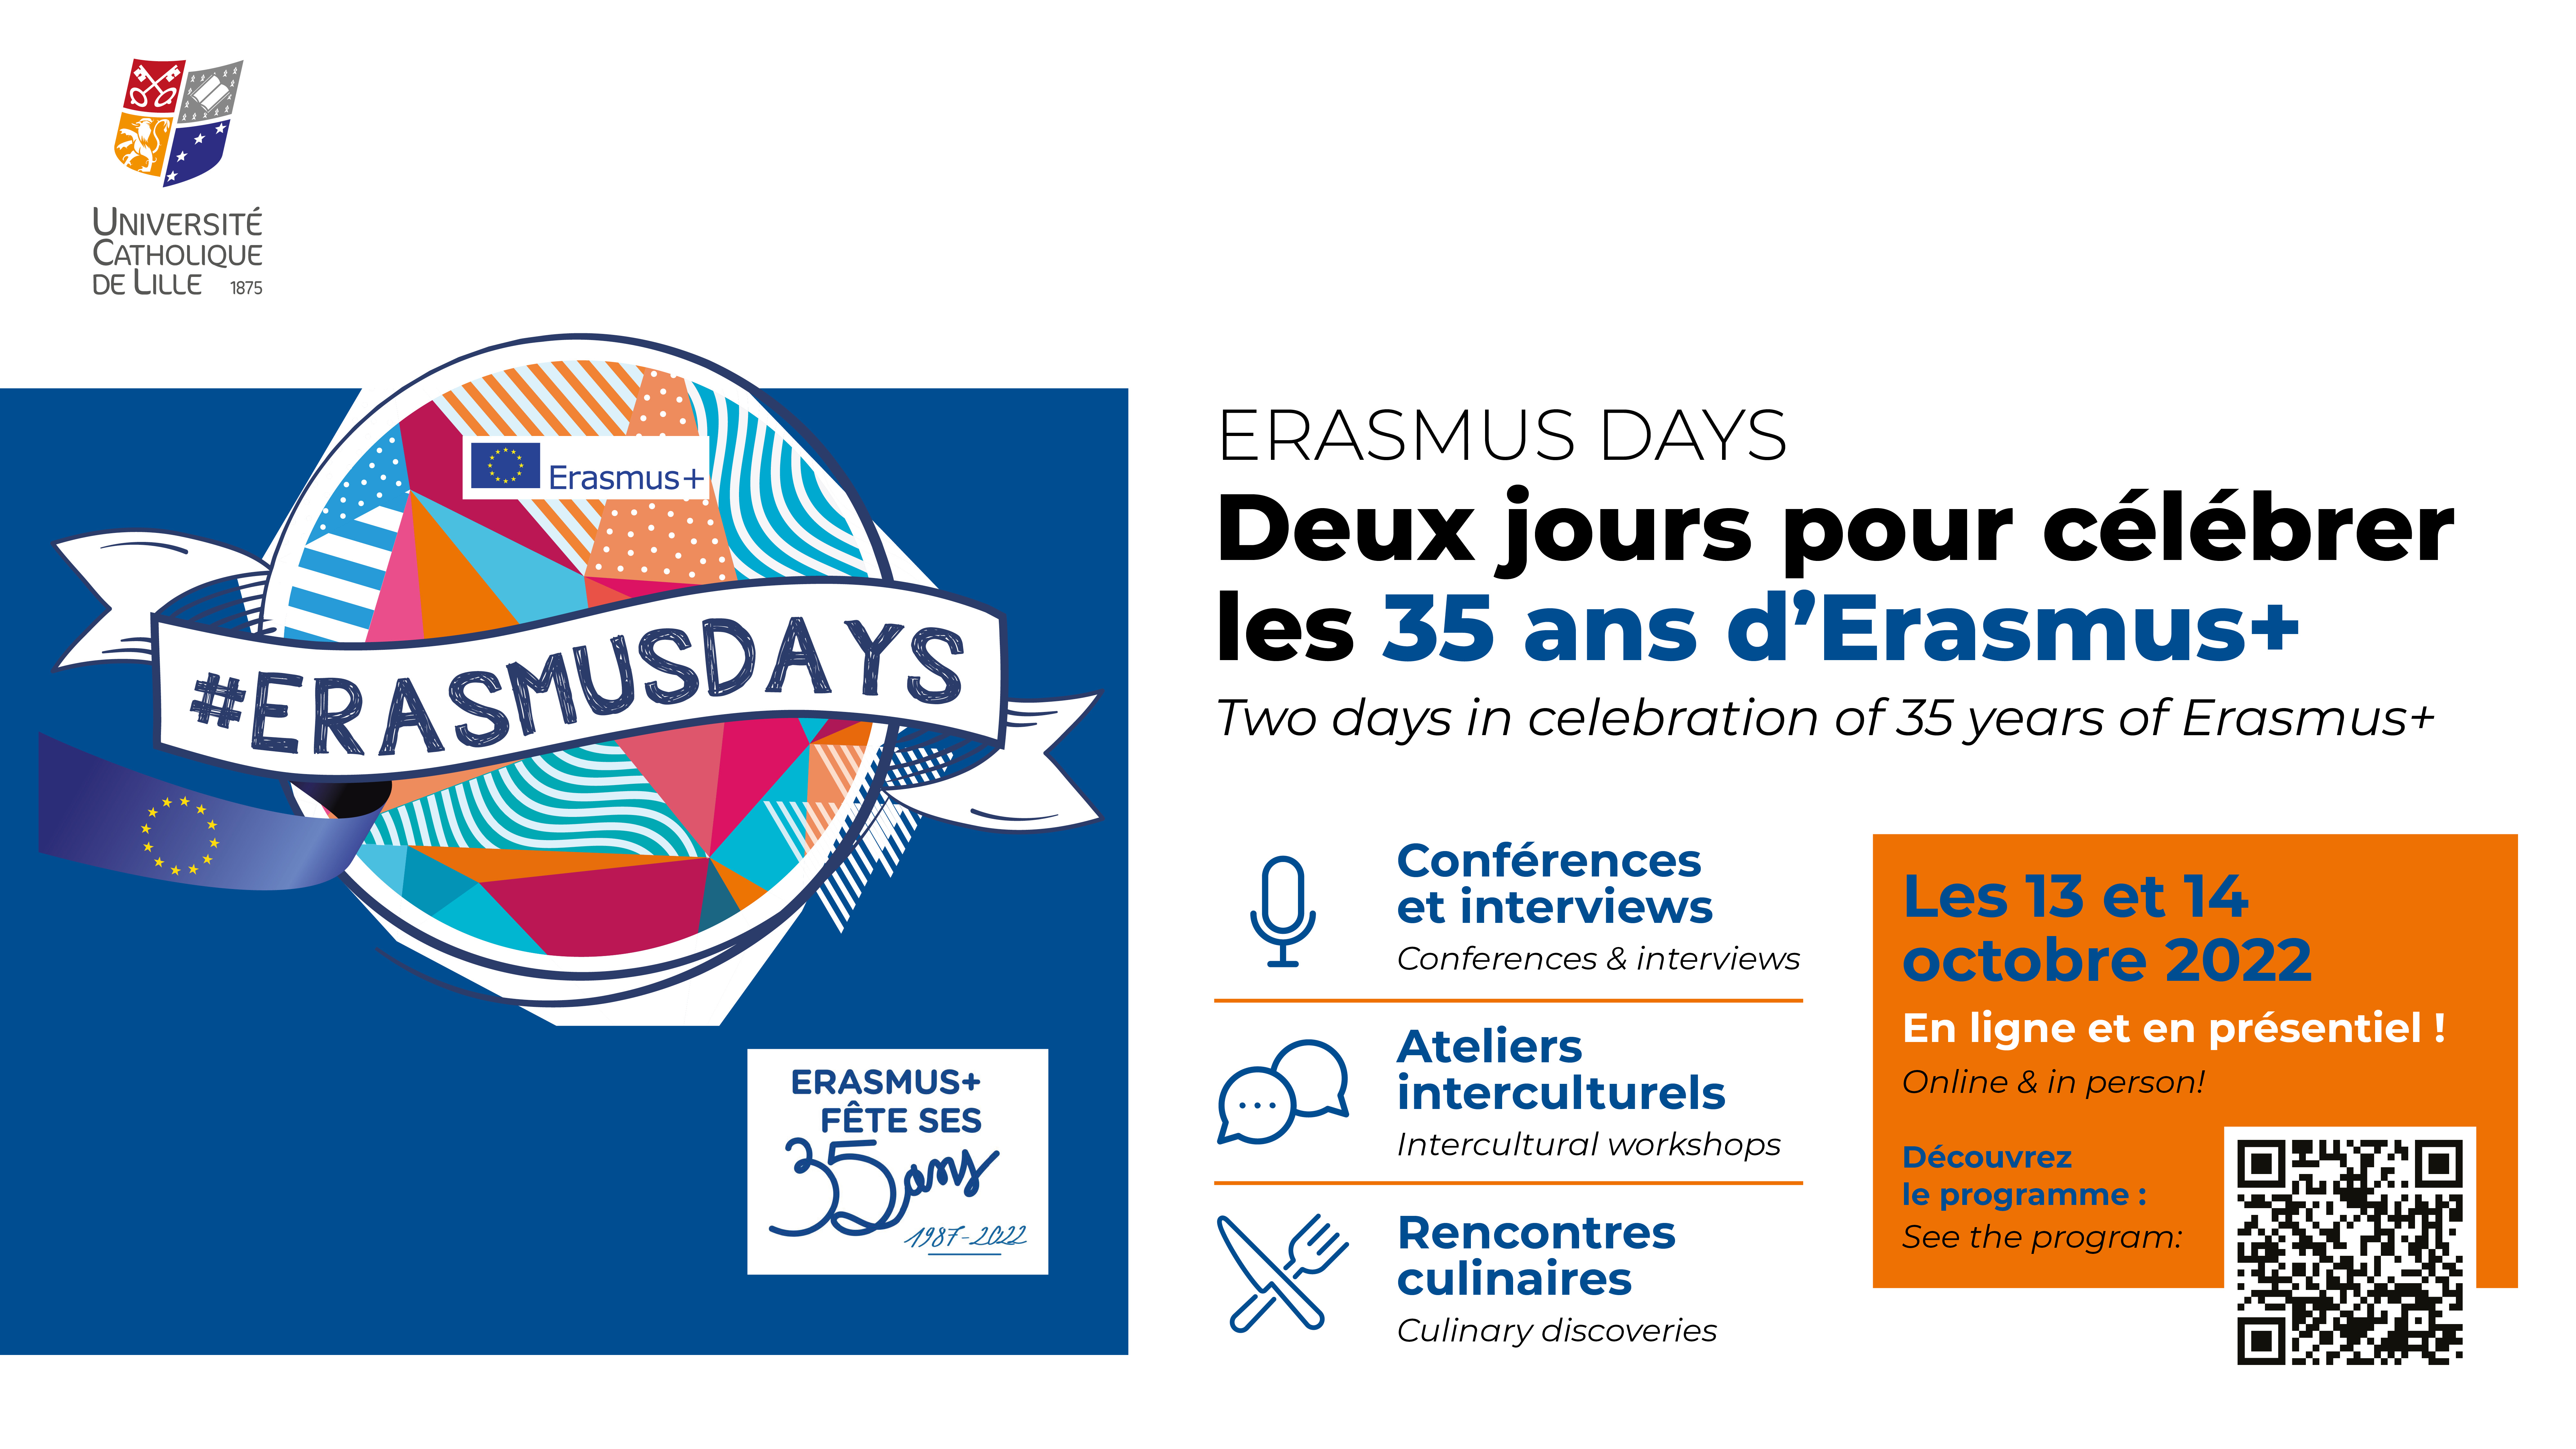 Erasmus Days programme